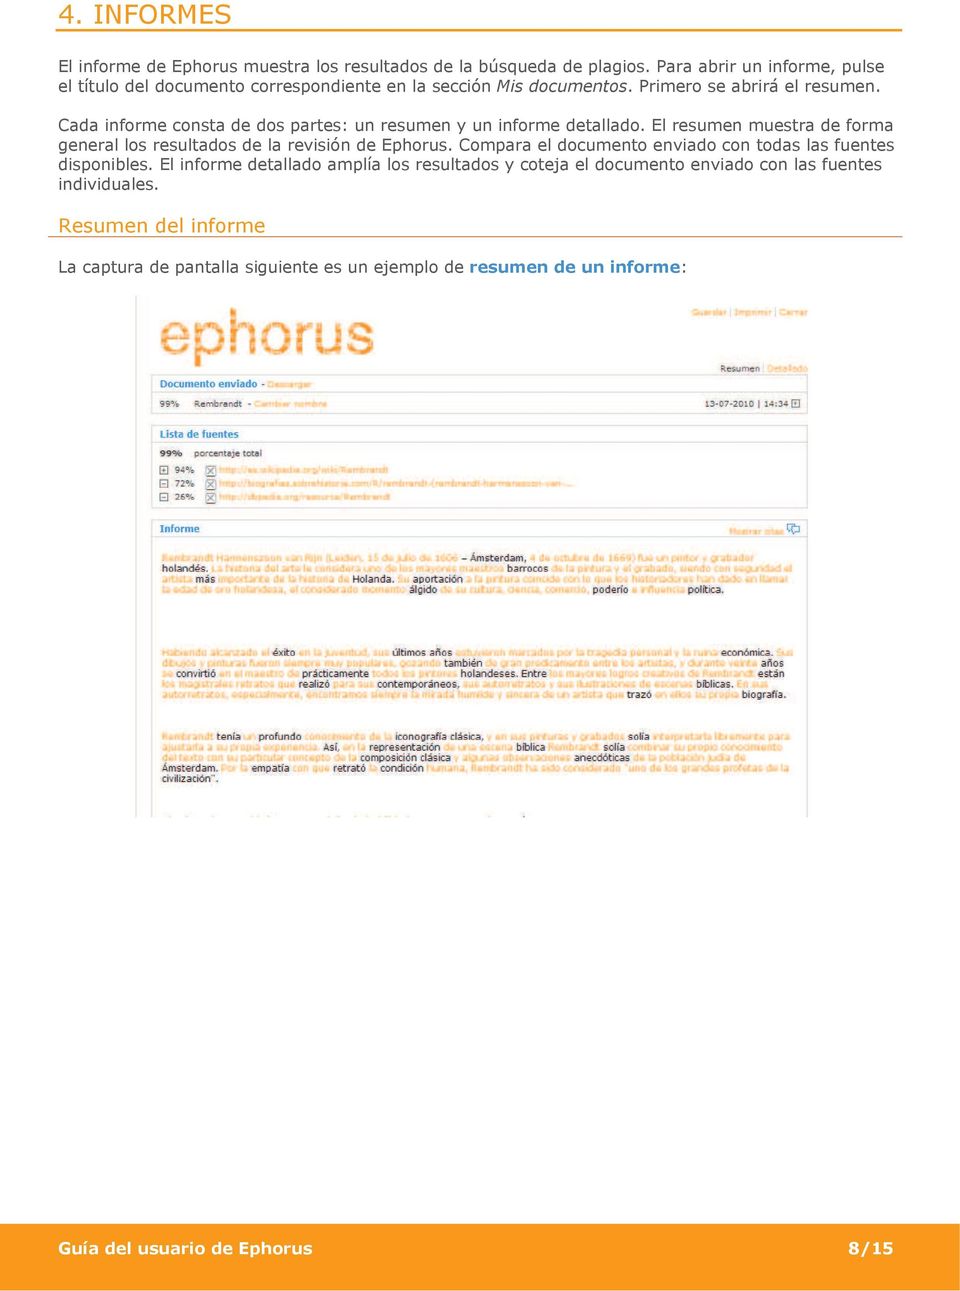 Cada informe consta de dos partes: un resumen y un informe detallado. El resumen muestra de forma general los resultados de la revisión de Ephorus.